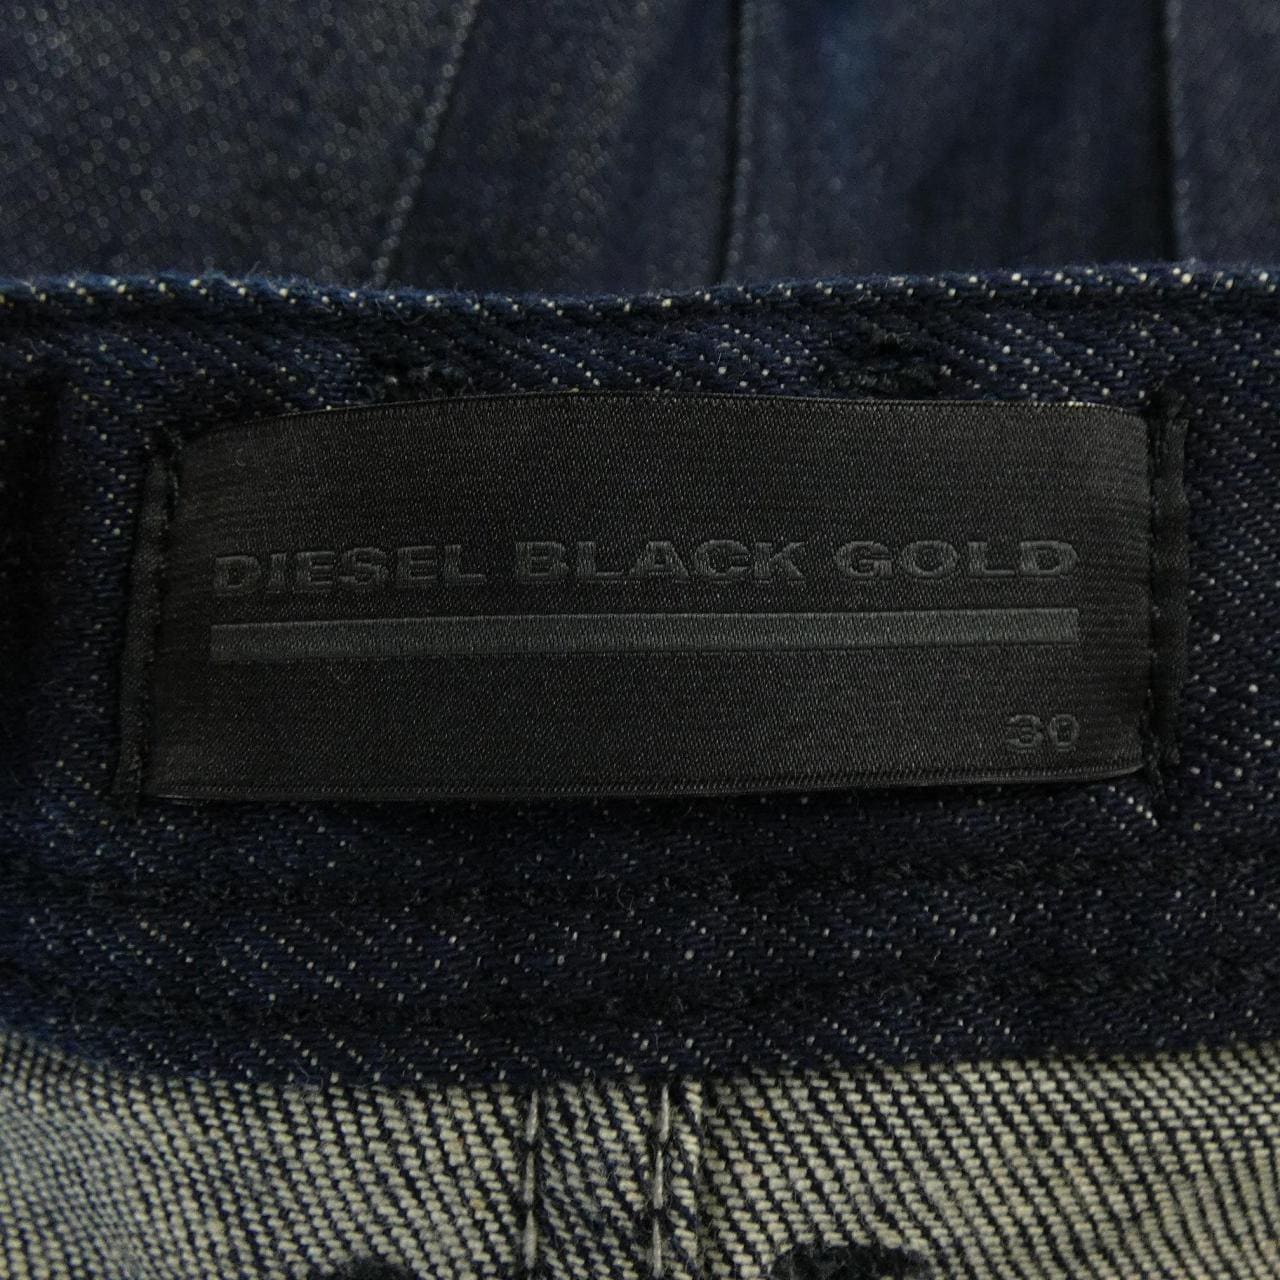 柴油黑金DIESEL BLACK GOLD牛仔褲